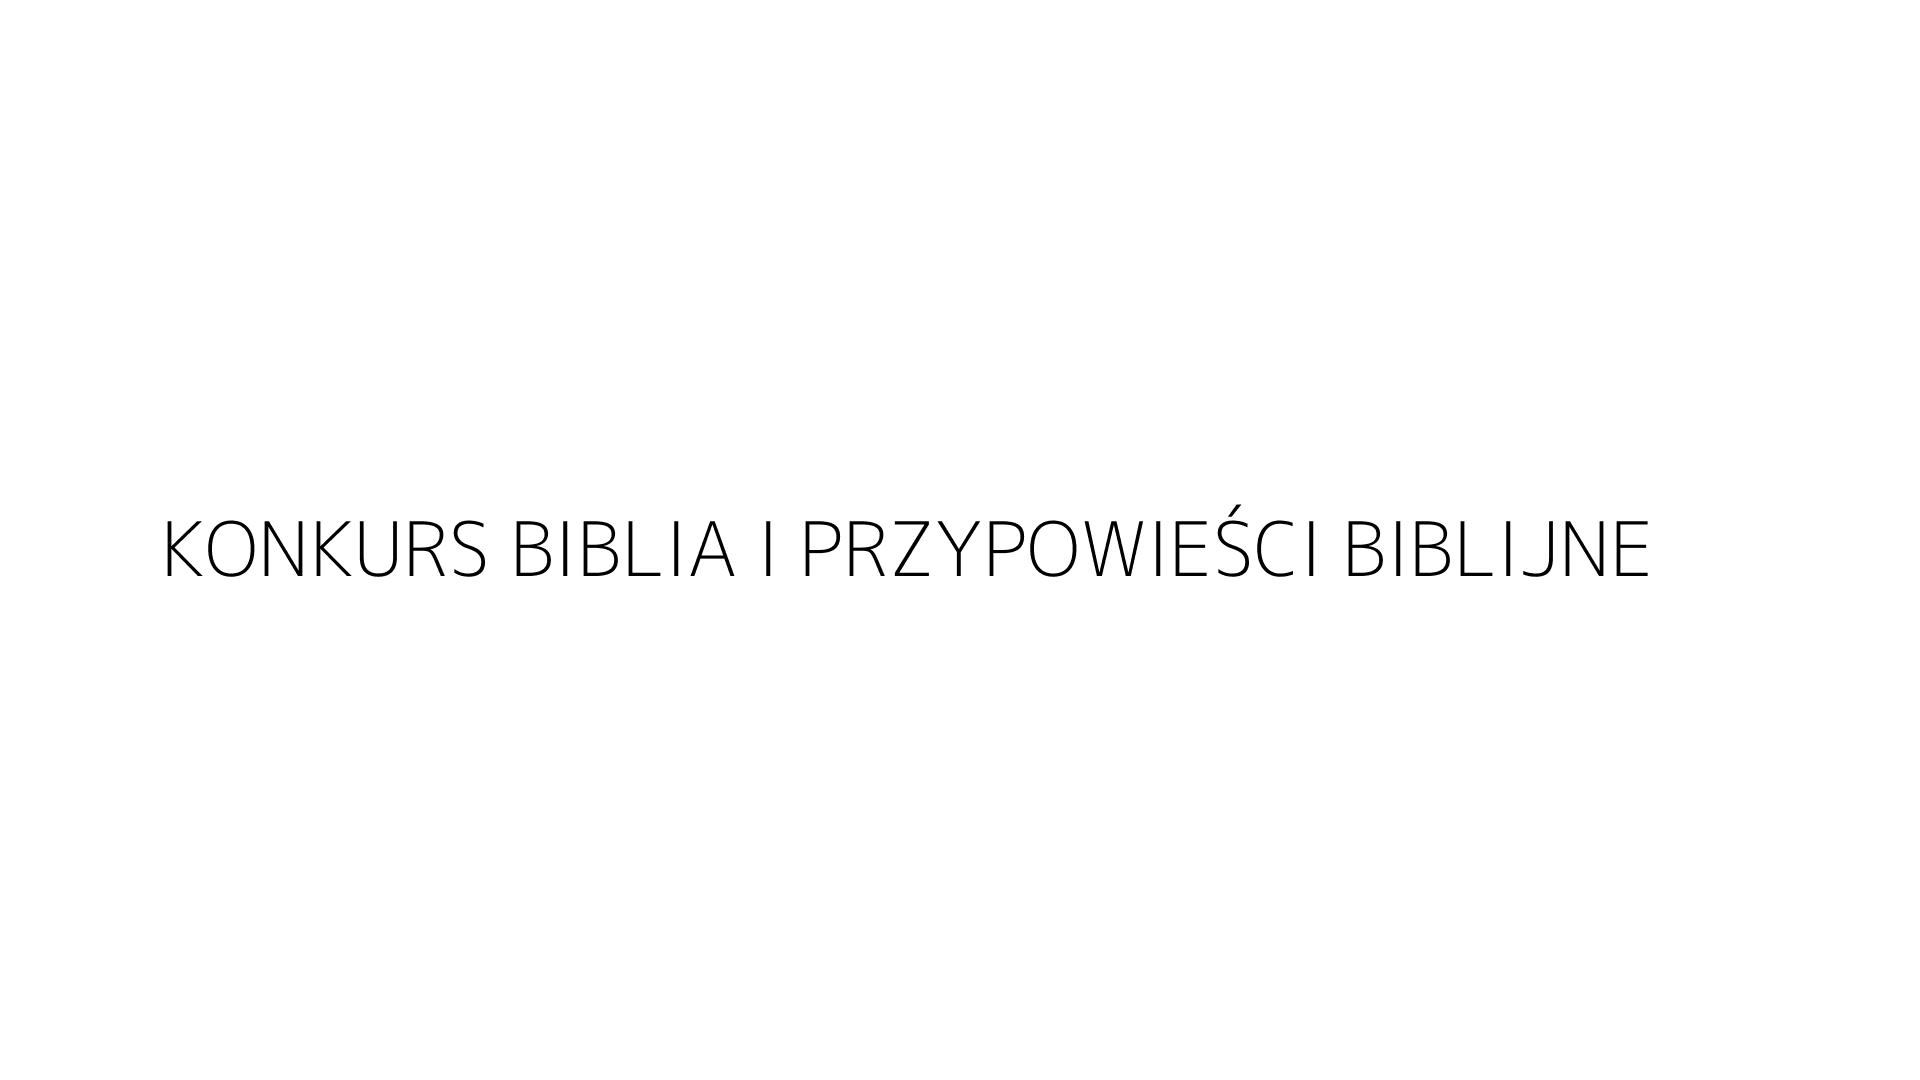 KONKURS BIBLIA I PRZYPOWIEŚCI BIBLIJNE